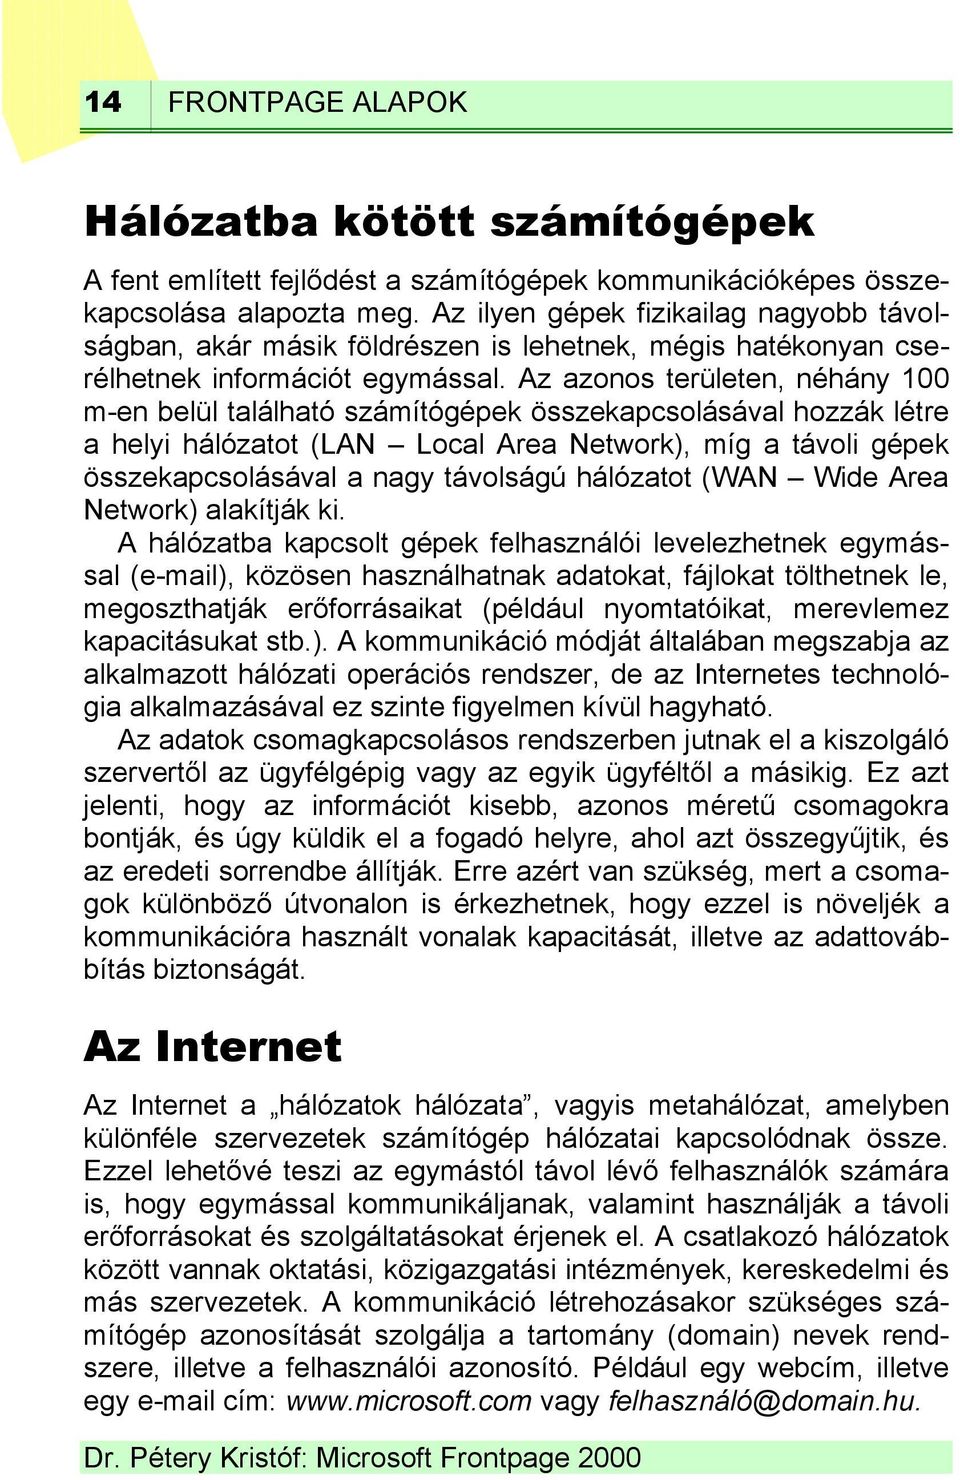 Az azonos területen, néhány 100 m-en belül található számítógépek összekapcsolásával hozzák létre a helyi hálózatot (LAN Local Area Network), míg a távoli gépek összekapcsolásával a nagy távolságú